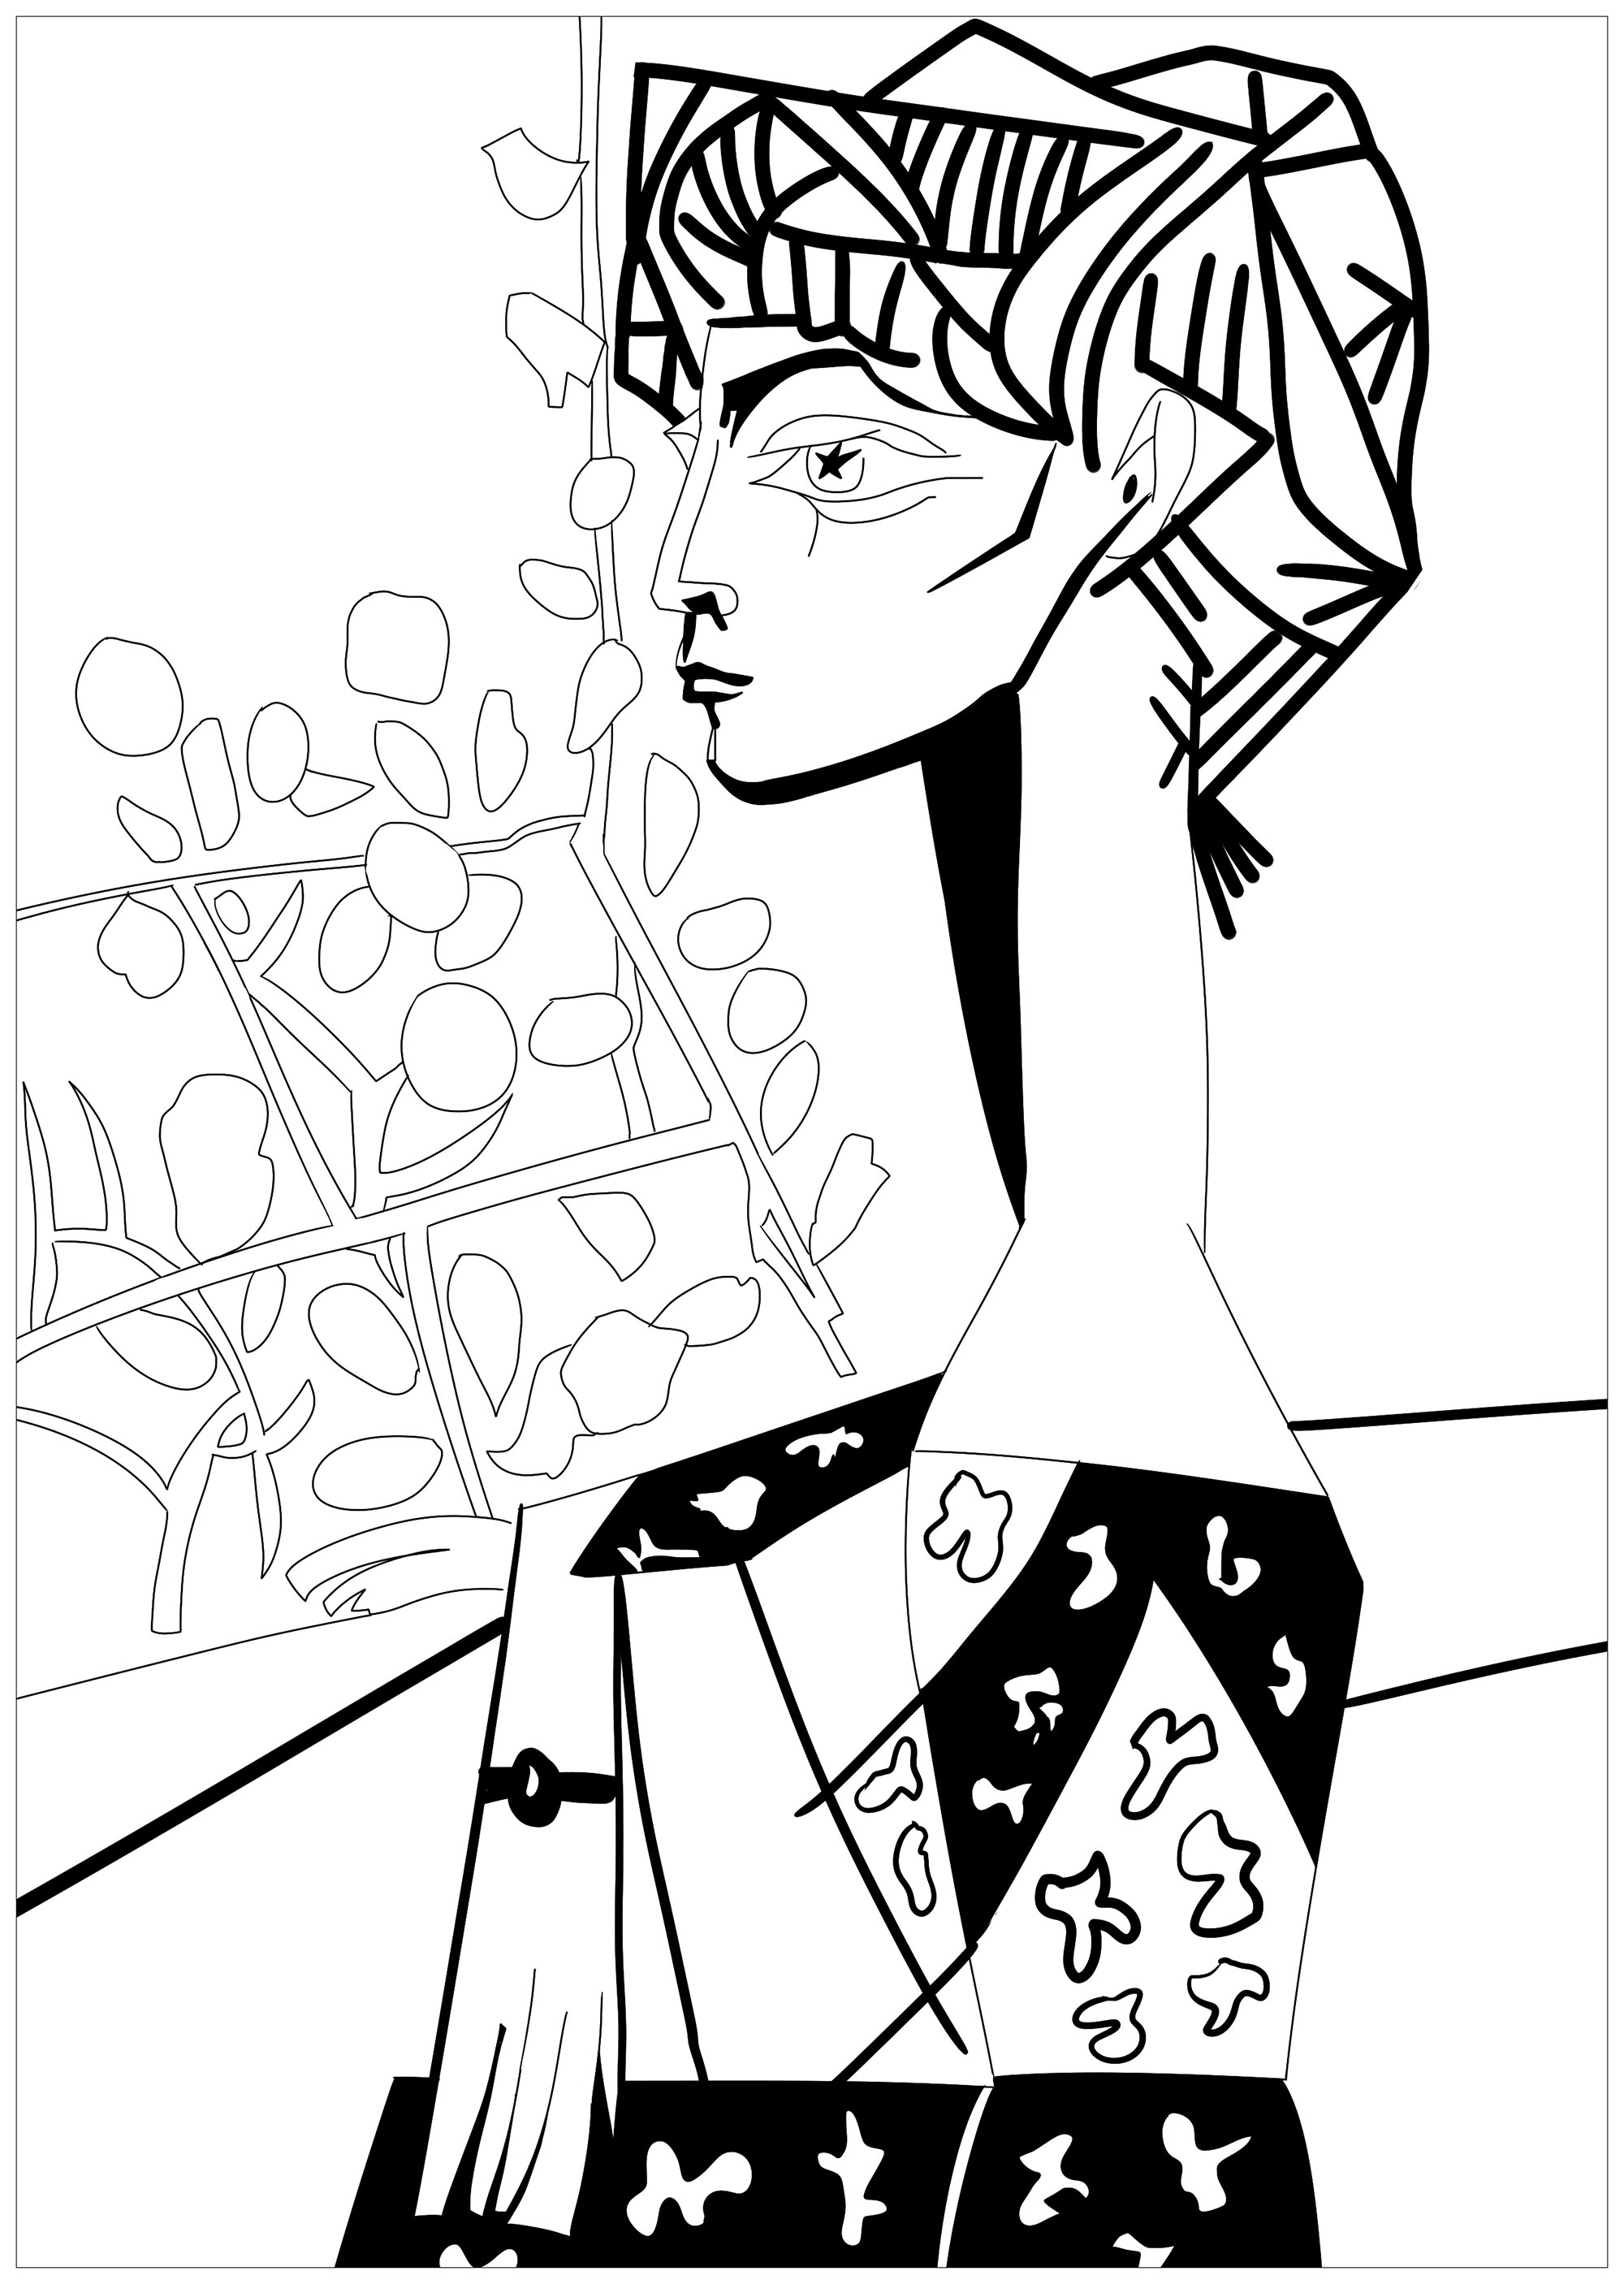 Página para colorir inspirada numa obra-prima de Pablo Picasso : Jacqueline com flores